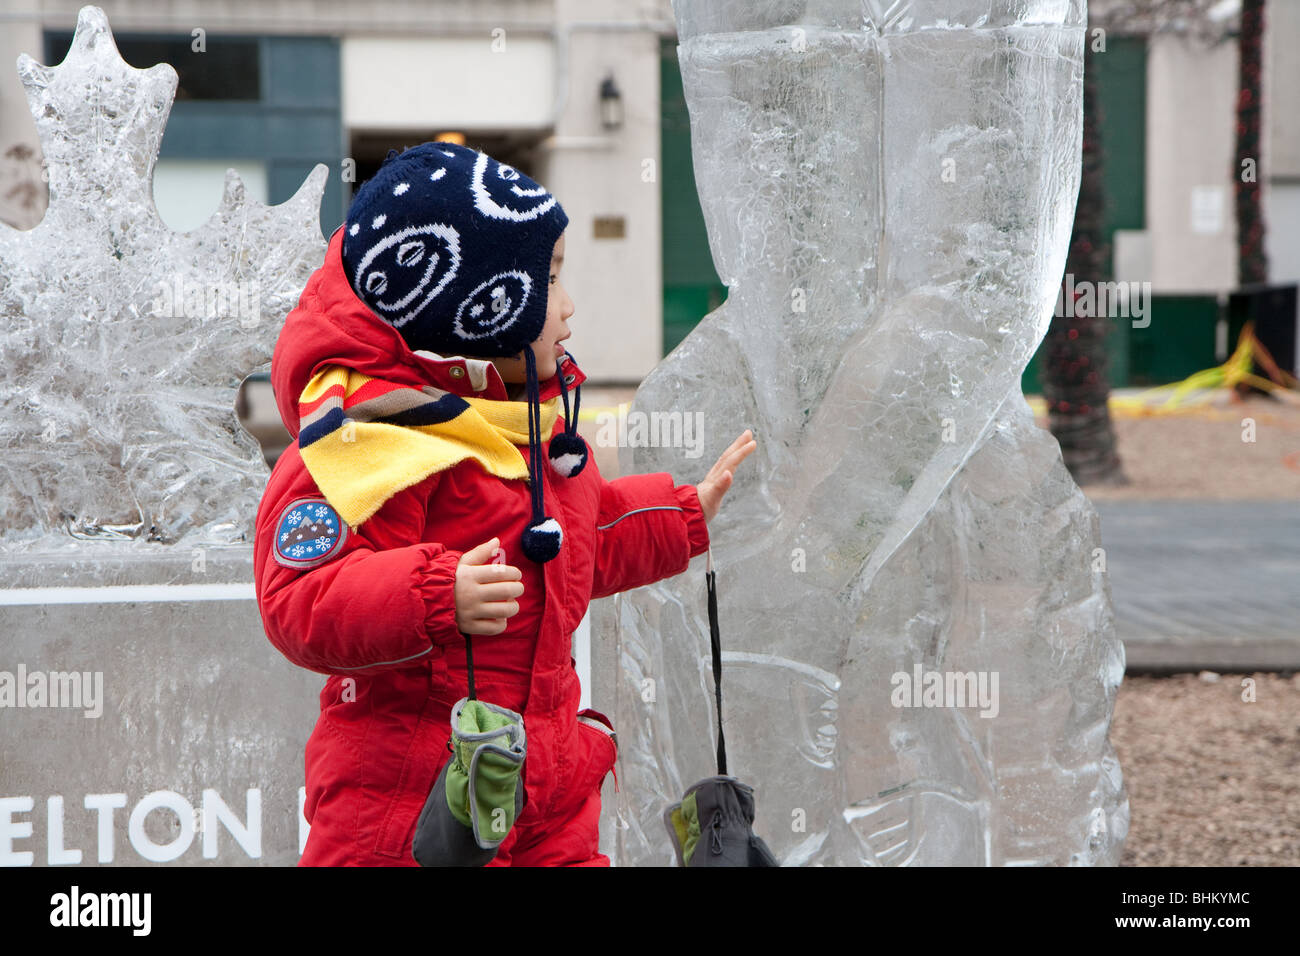 Un garçon asiatique posant pour une photo à côté d'une sculpture de glace Banque D'Images